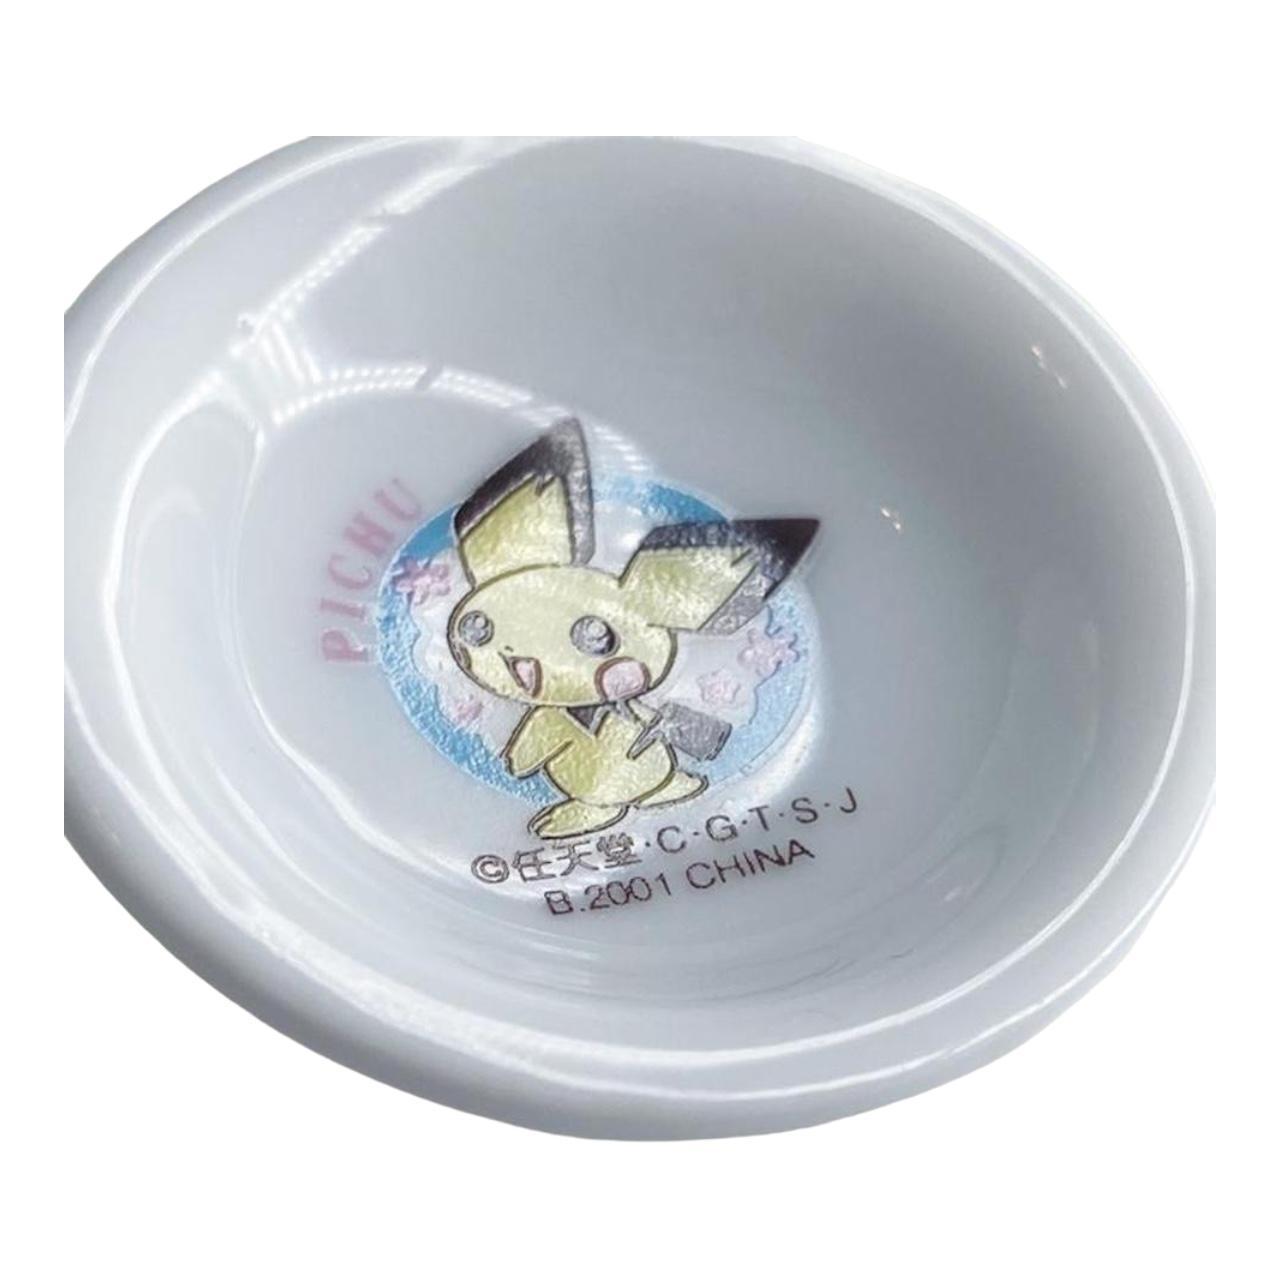 2001 Pokemon Pocket Monsters Pichu Mini Ceramic Bowl Dish